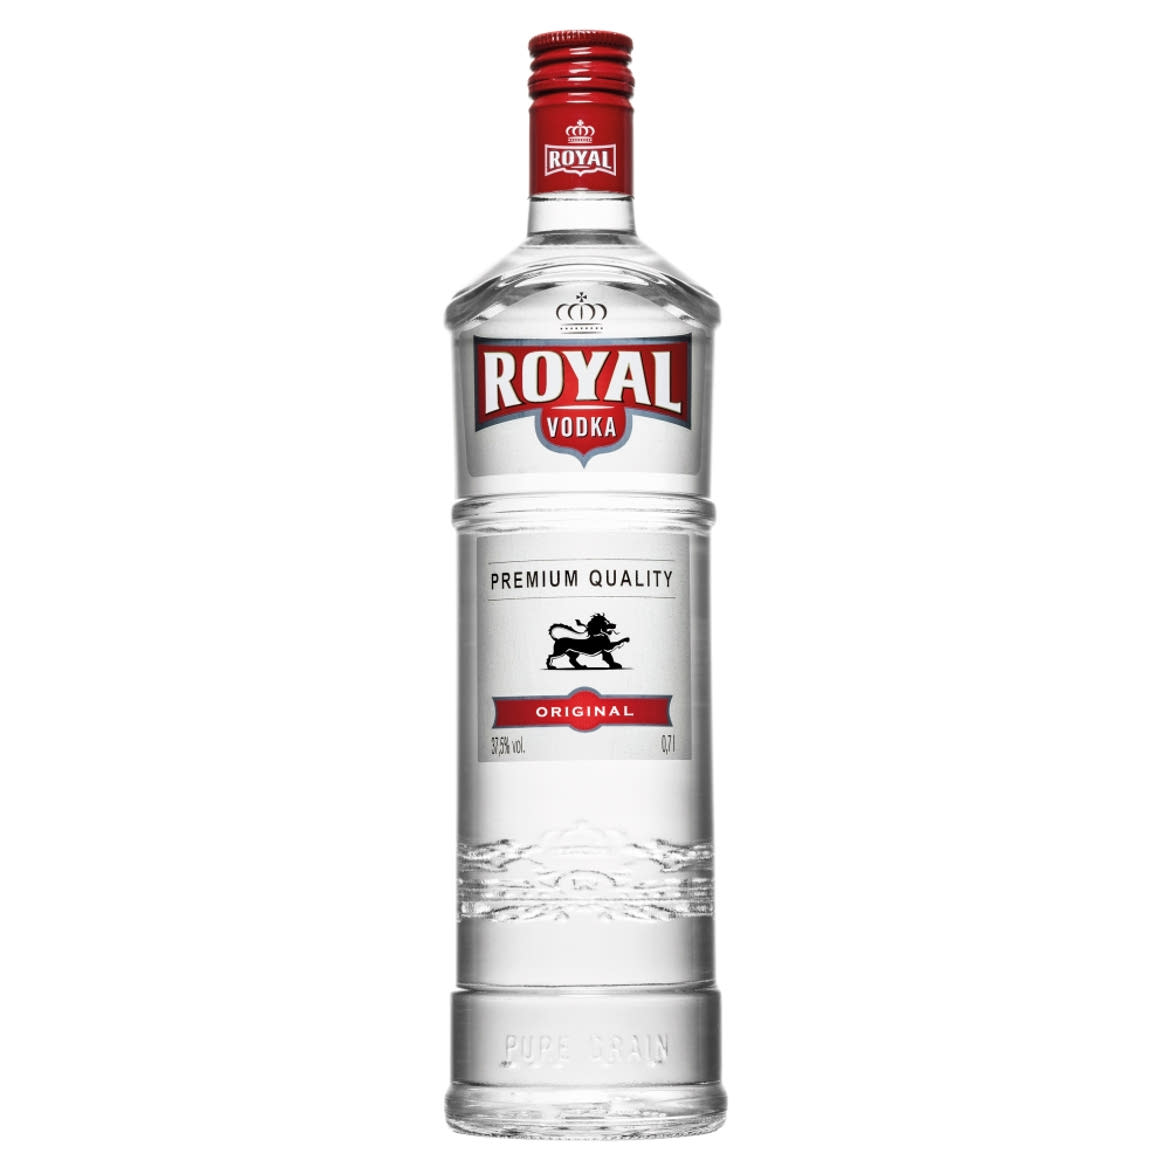 Royal vodka 37,5%